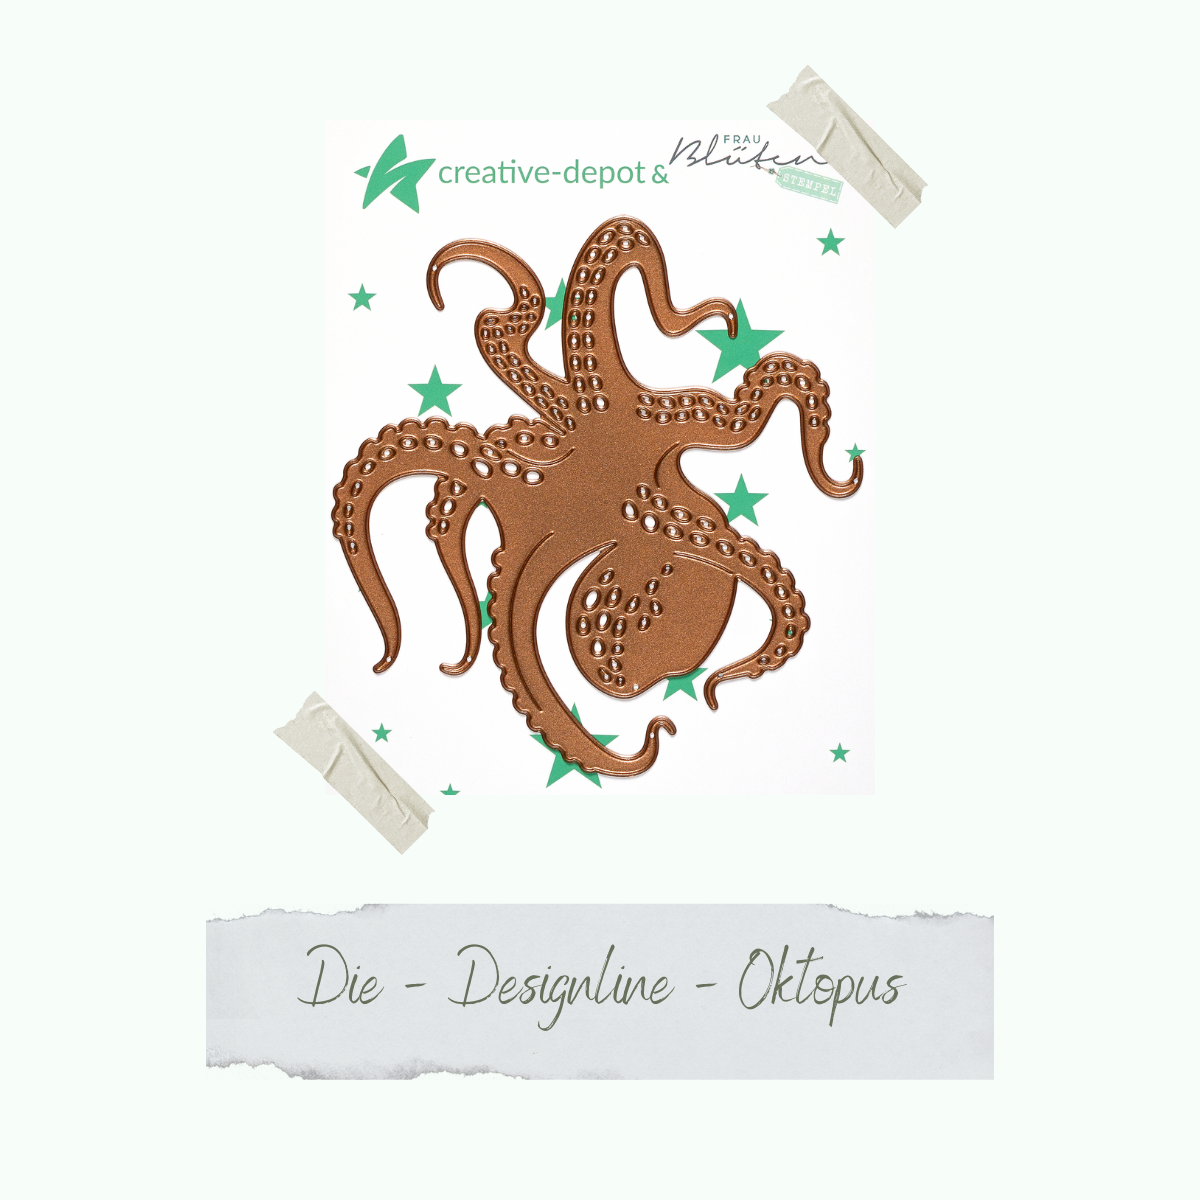 Die- Designline - Oktopus